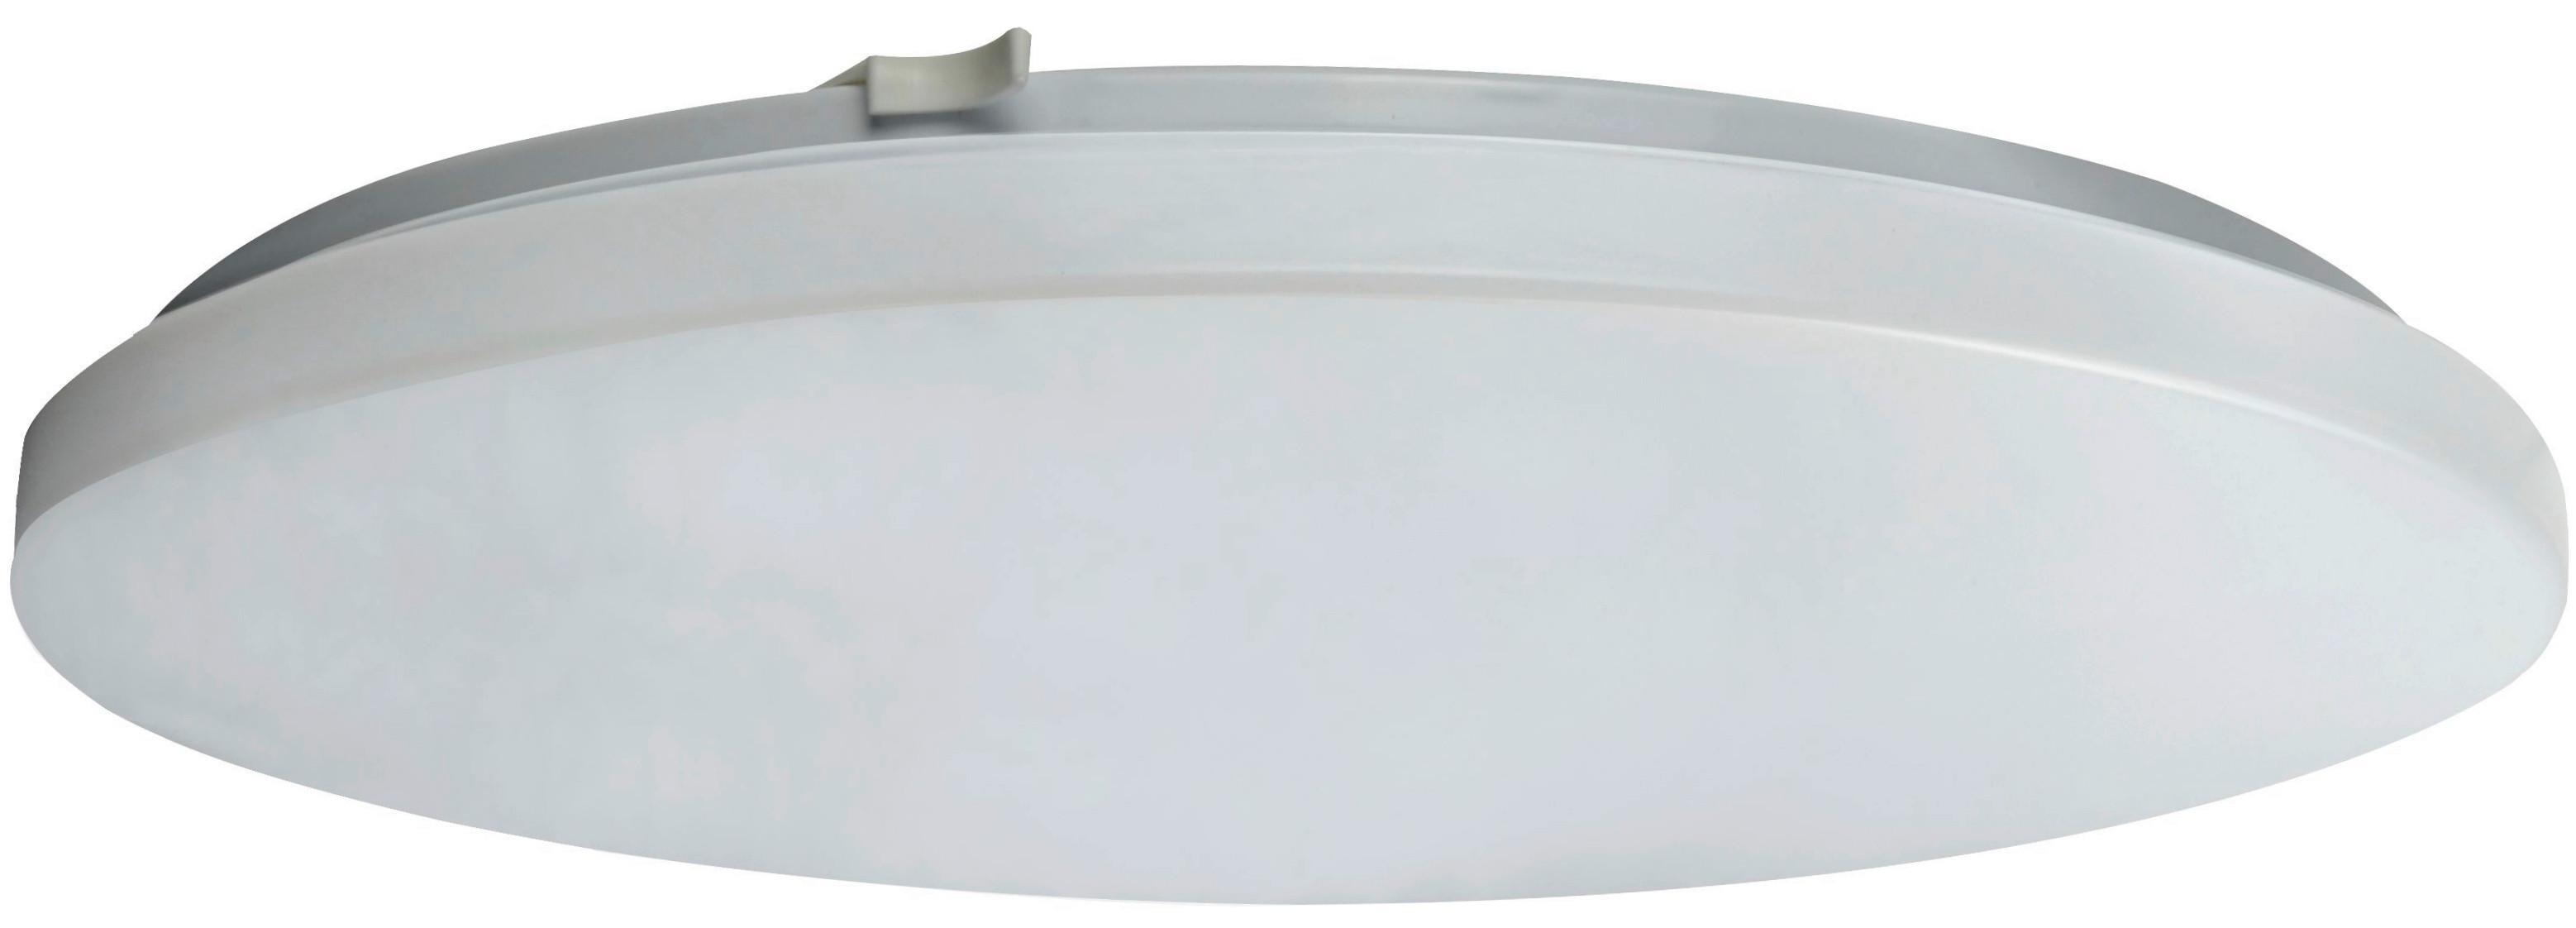 LED-Deckenleuchte 2023501200196 - Weiß, Basics, Kunststoff/Metall (33/5,7cm)